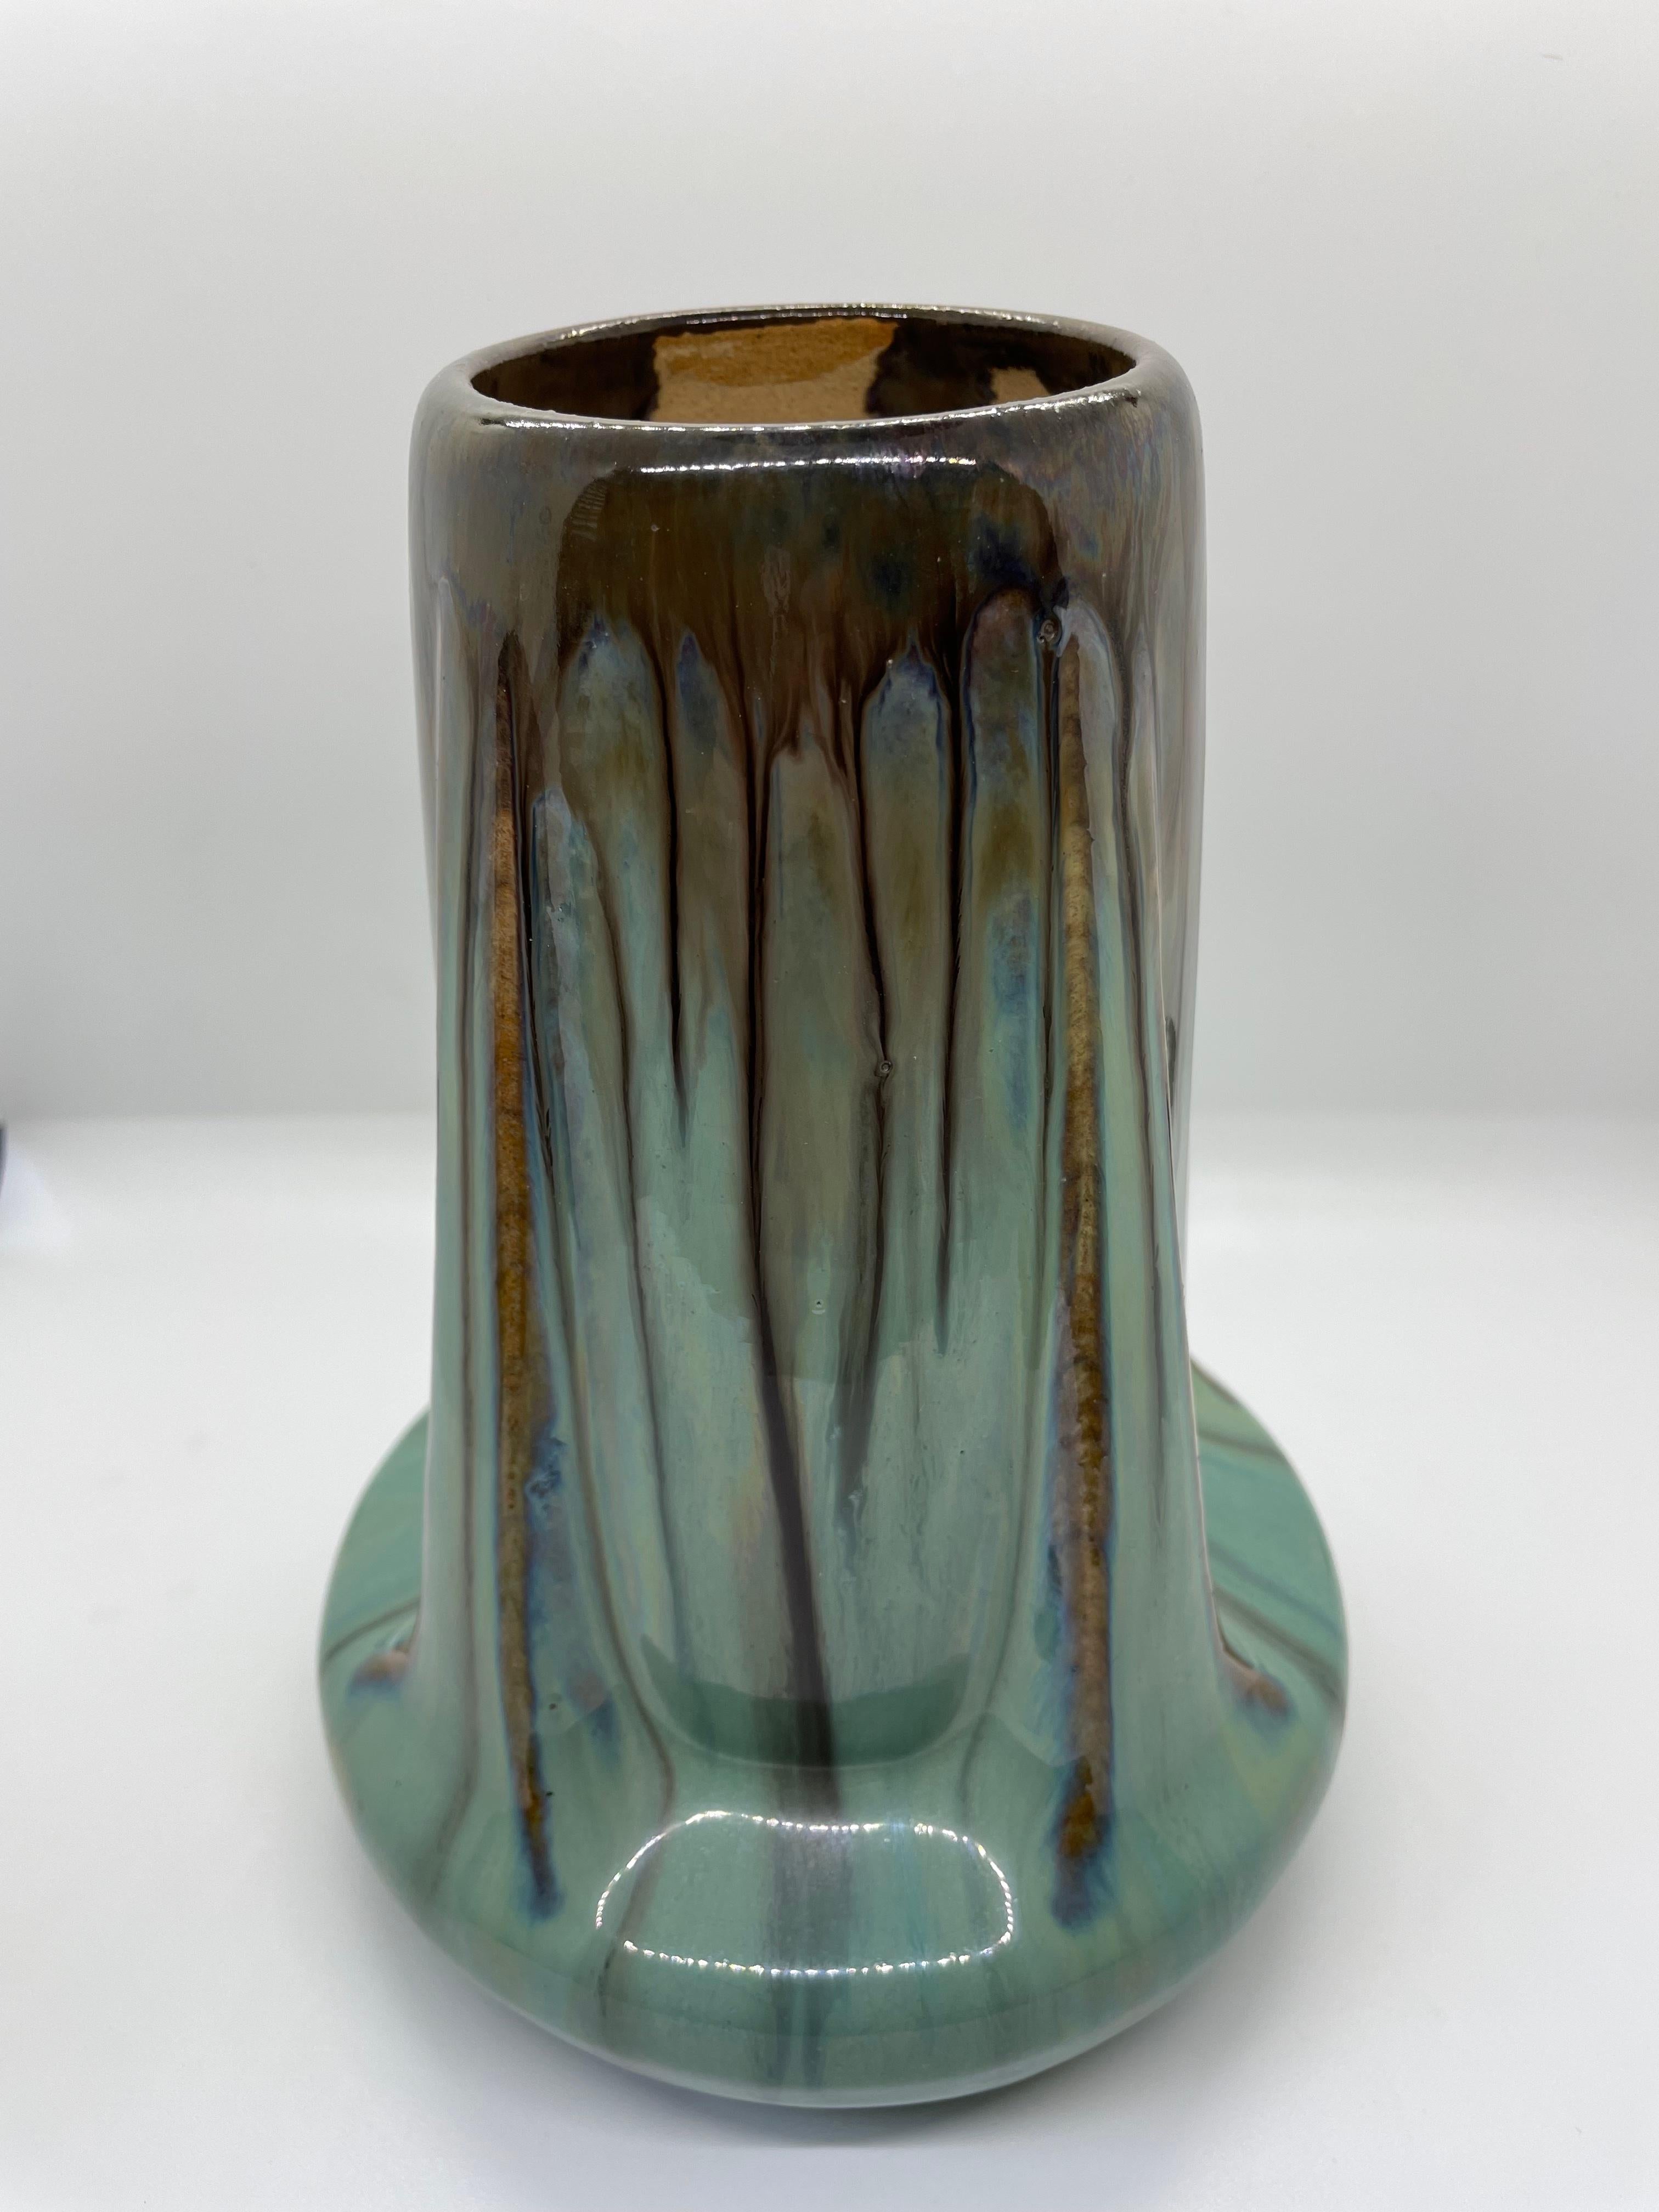 Vase Fulper Buttress dans de magnifiques nuances de vert et de brun. Très bel exemple de poterie d'art américaine du début du 20e siècle, fabriquée dans le New Jersey. Quelques minuscules 